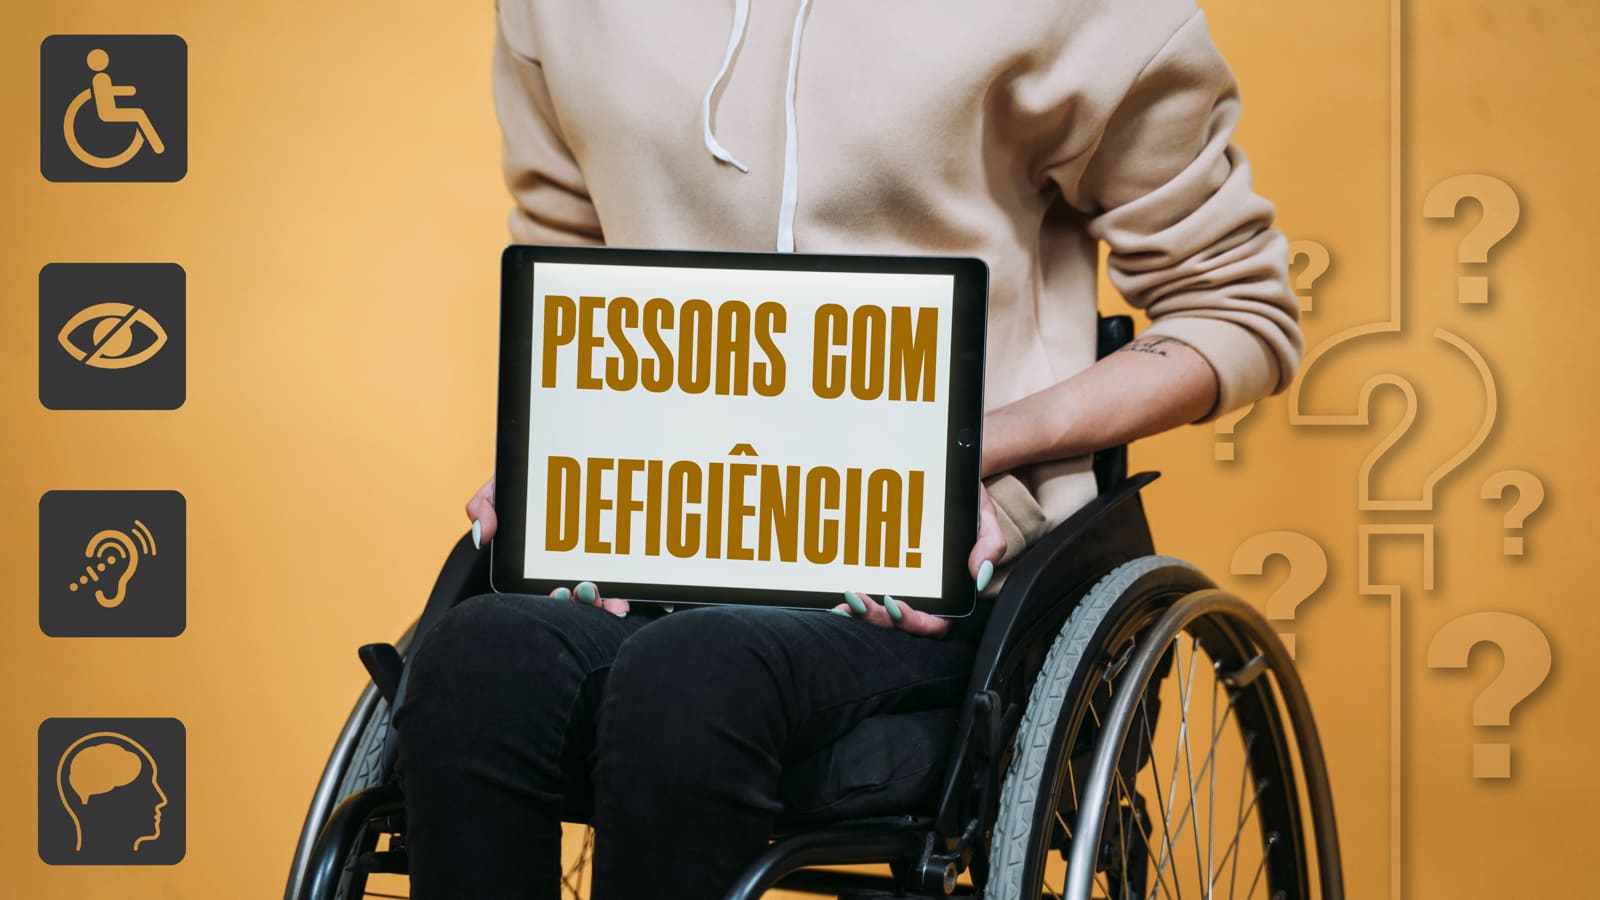 Imagem com cadeirante mostrando a tela de um tablet, onde aparece a forma adequada de como se referir a pessoas com deficiência.